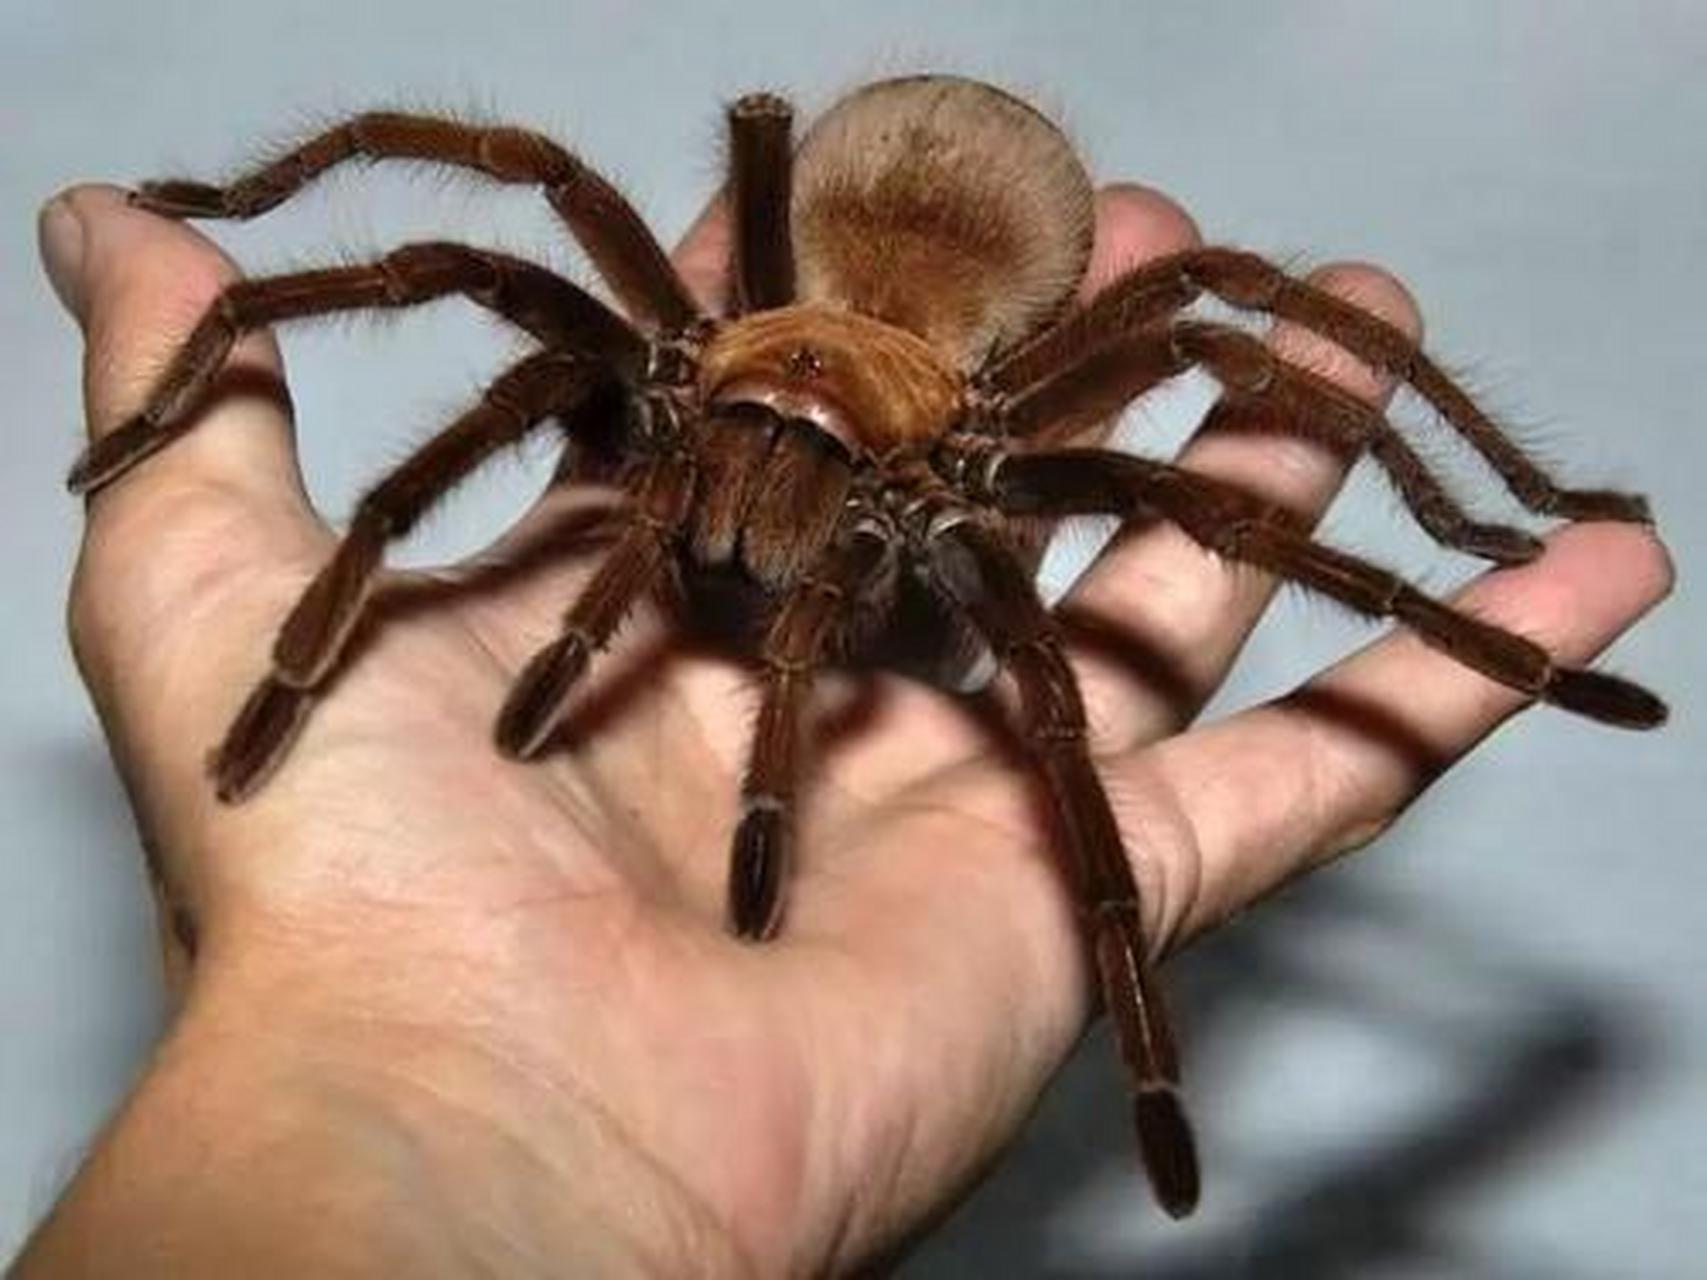 【世界上最大的蜘蛛】亚马逊巨人食鸟蛛,是世界上最大的蜘蛛,它们最长